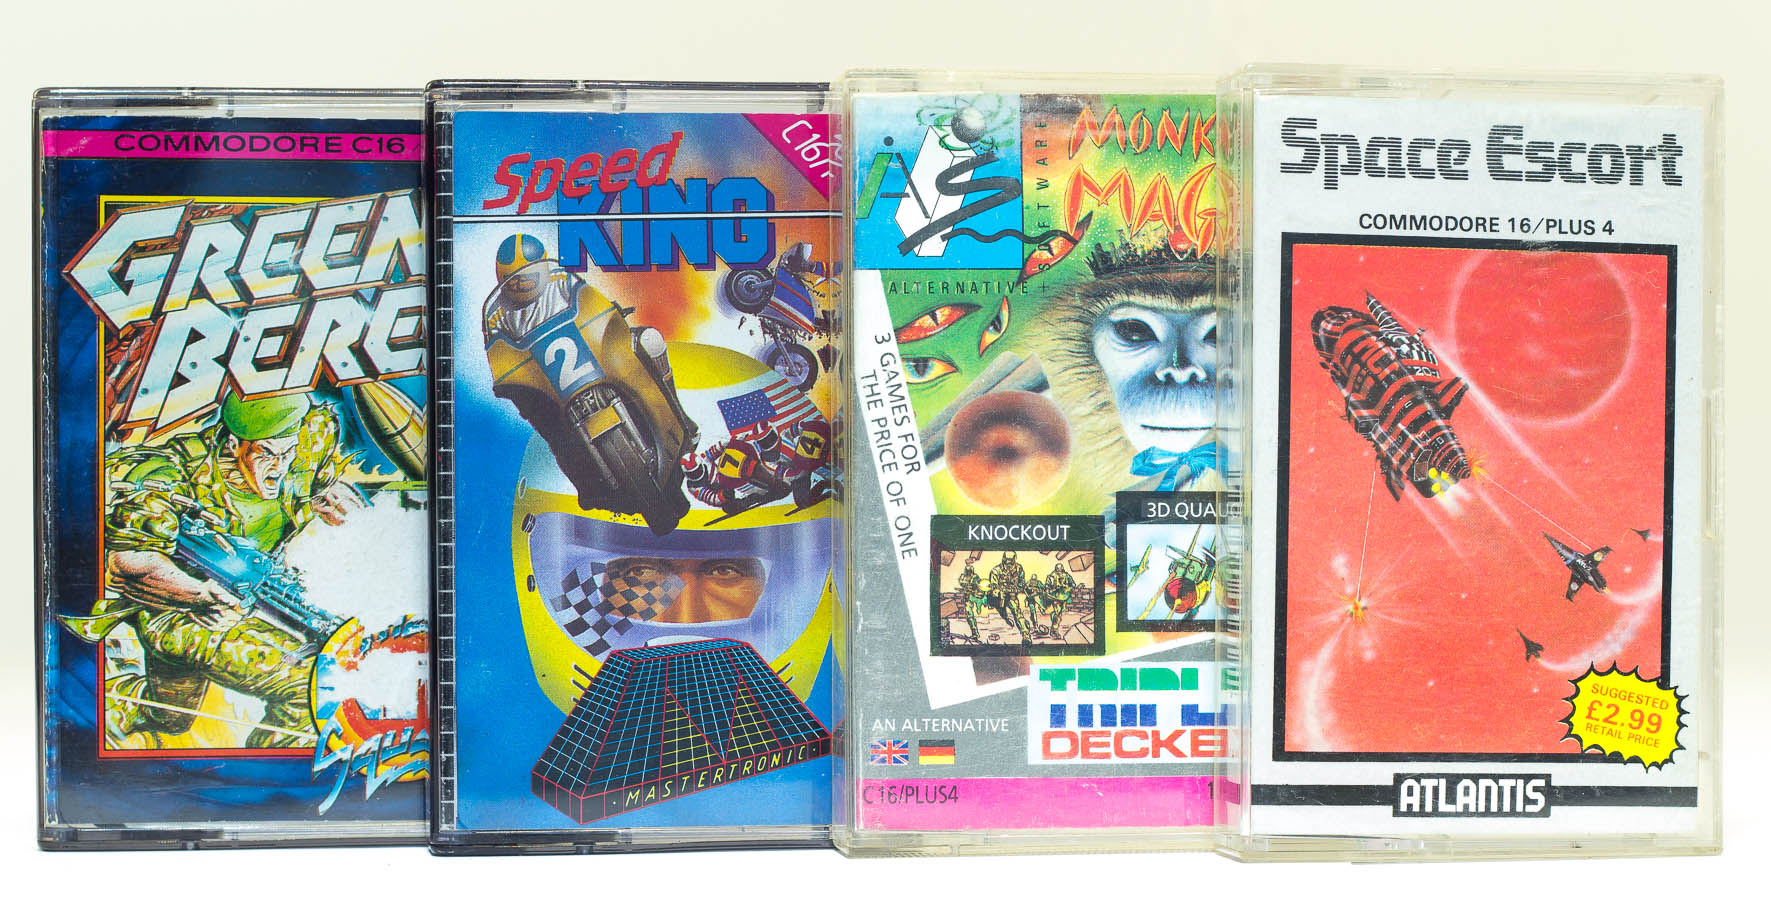 C16 Spielkassetten: Green Beret, Speed King, Monkey Magic/Knockout/3D Quasars und Space Escort. (Bild: Claudio Lione)